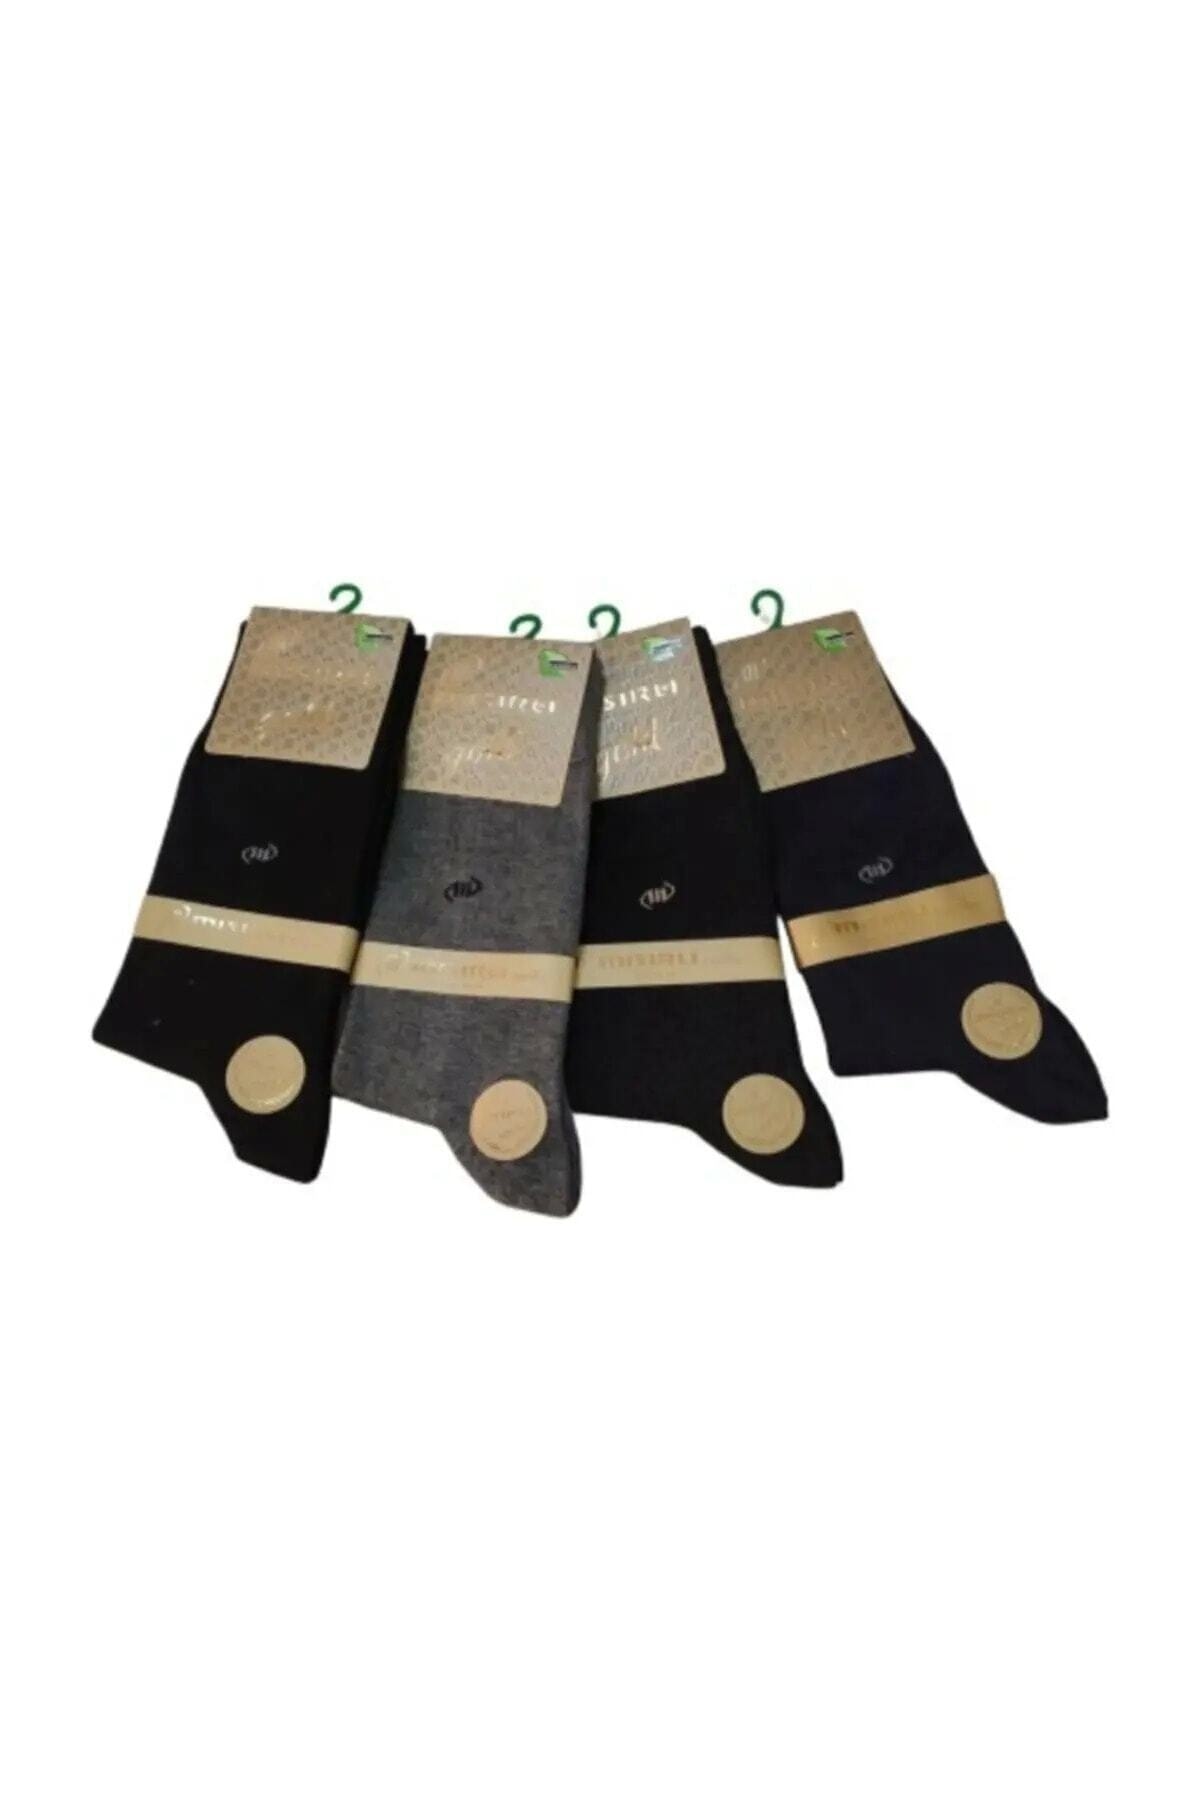 goldmısırlı 12 Çift Mısırlı Gold Mevsimlik Bambu Erkek Çorap Dikişsiz Karışık Renkler